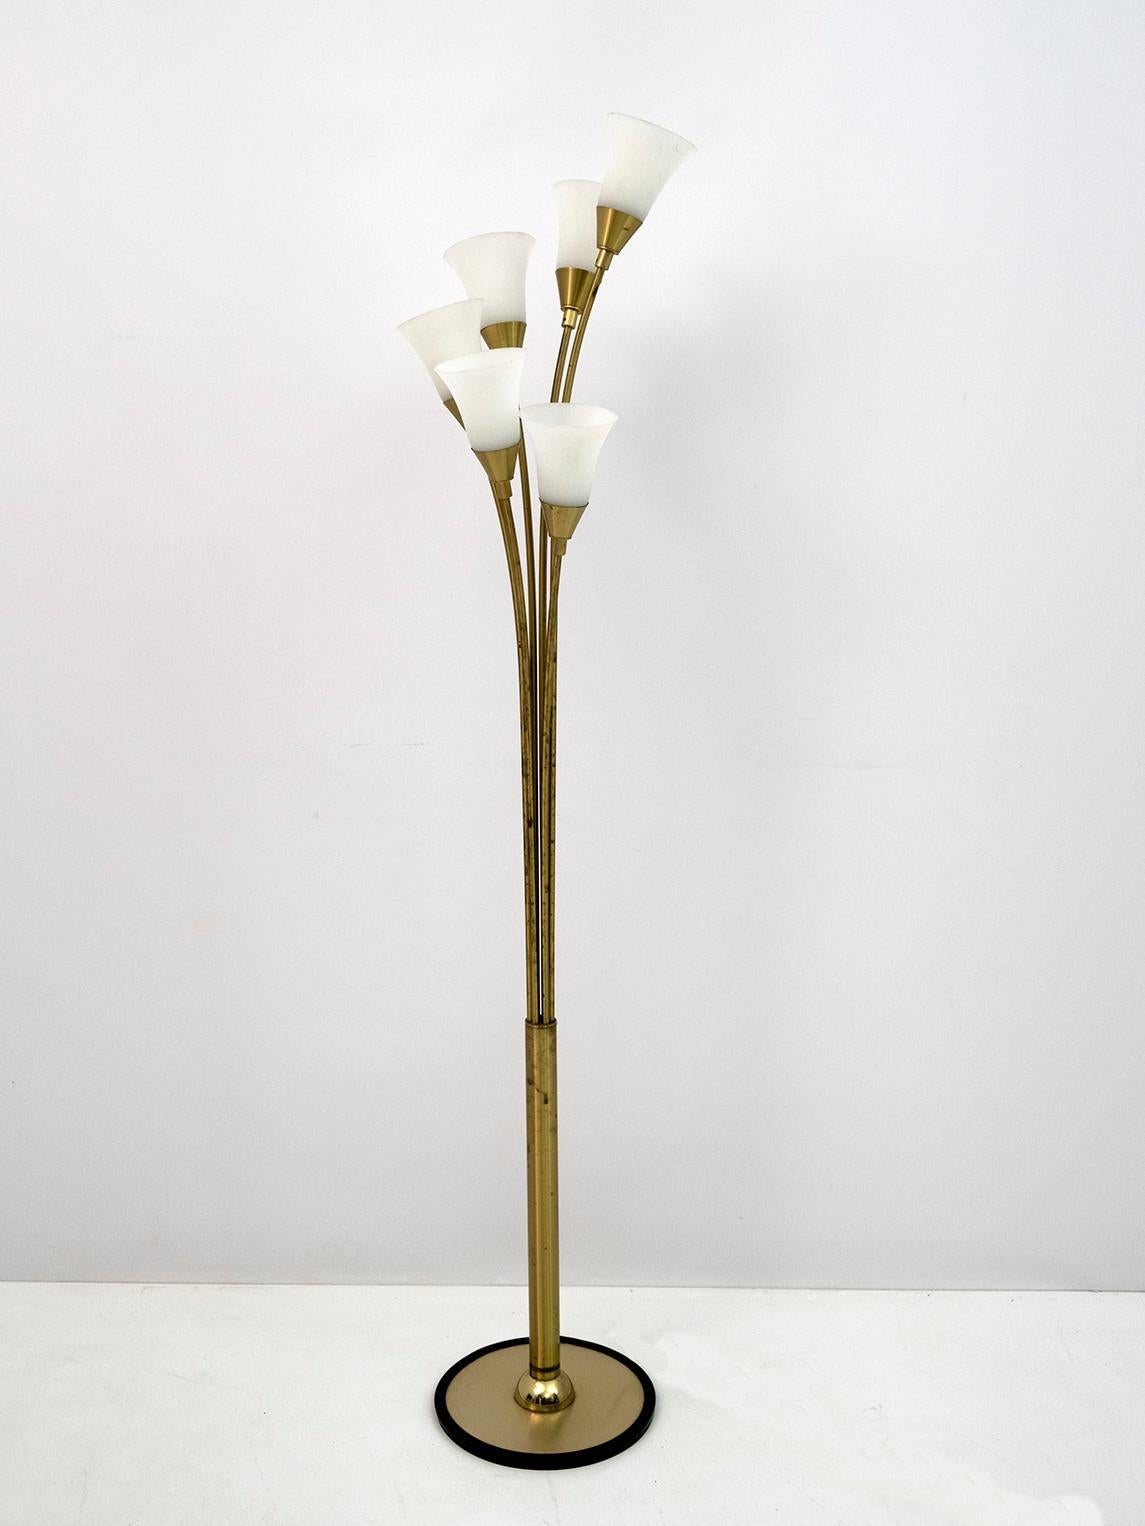 Lampadaire tulipe, en laiton doré, composé de six tiges qui supportent des coupelles en verre opalin. Système électrique fonctionnel, disponible avec des adaptateurs pour les ampoules américaines. 
Production italienne des années 1960.